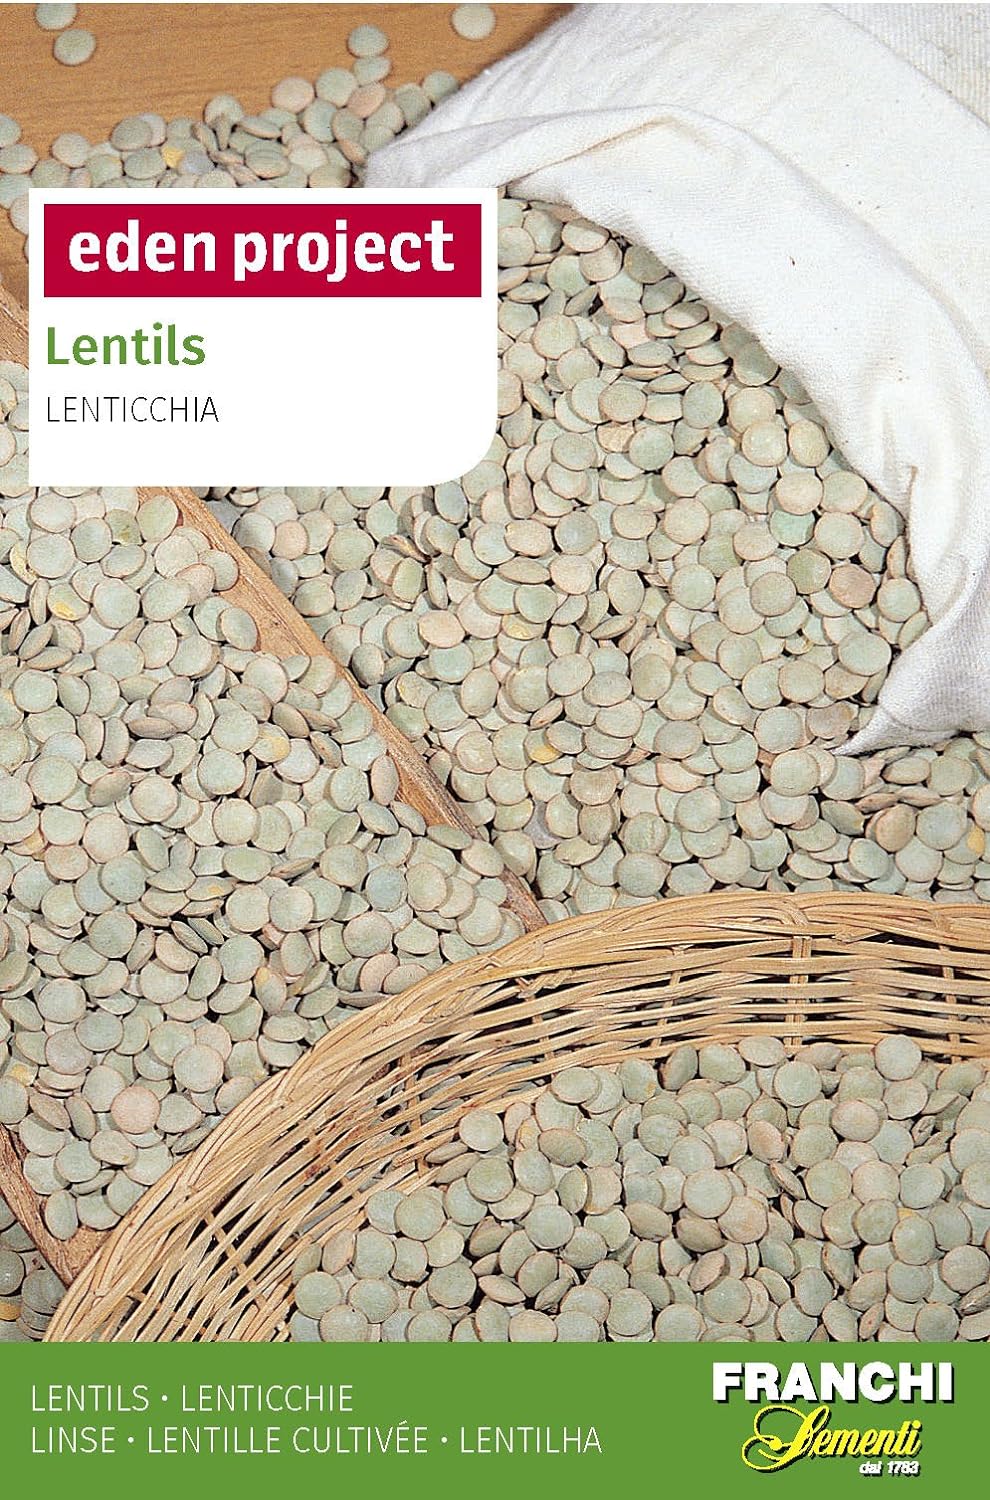 Lentil seeds